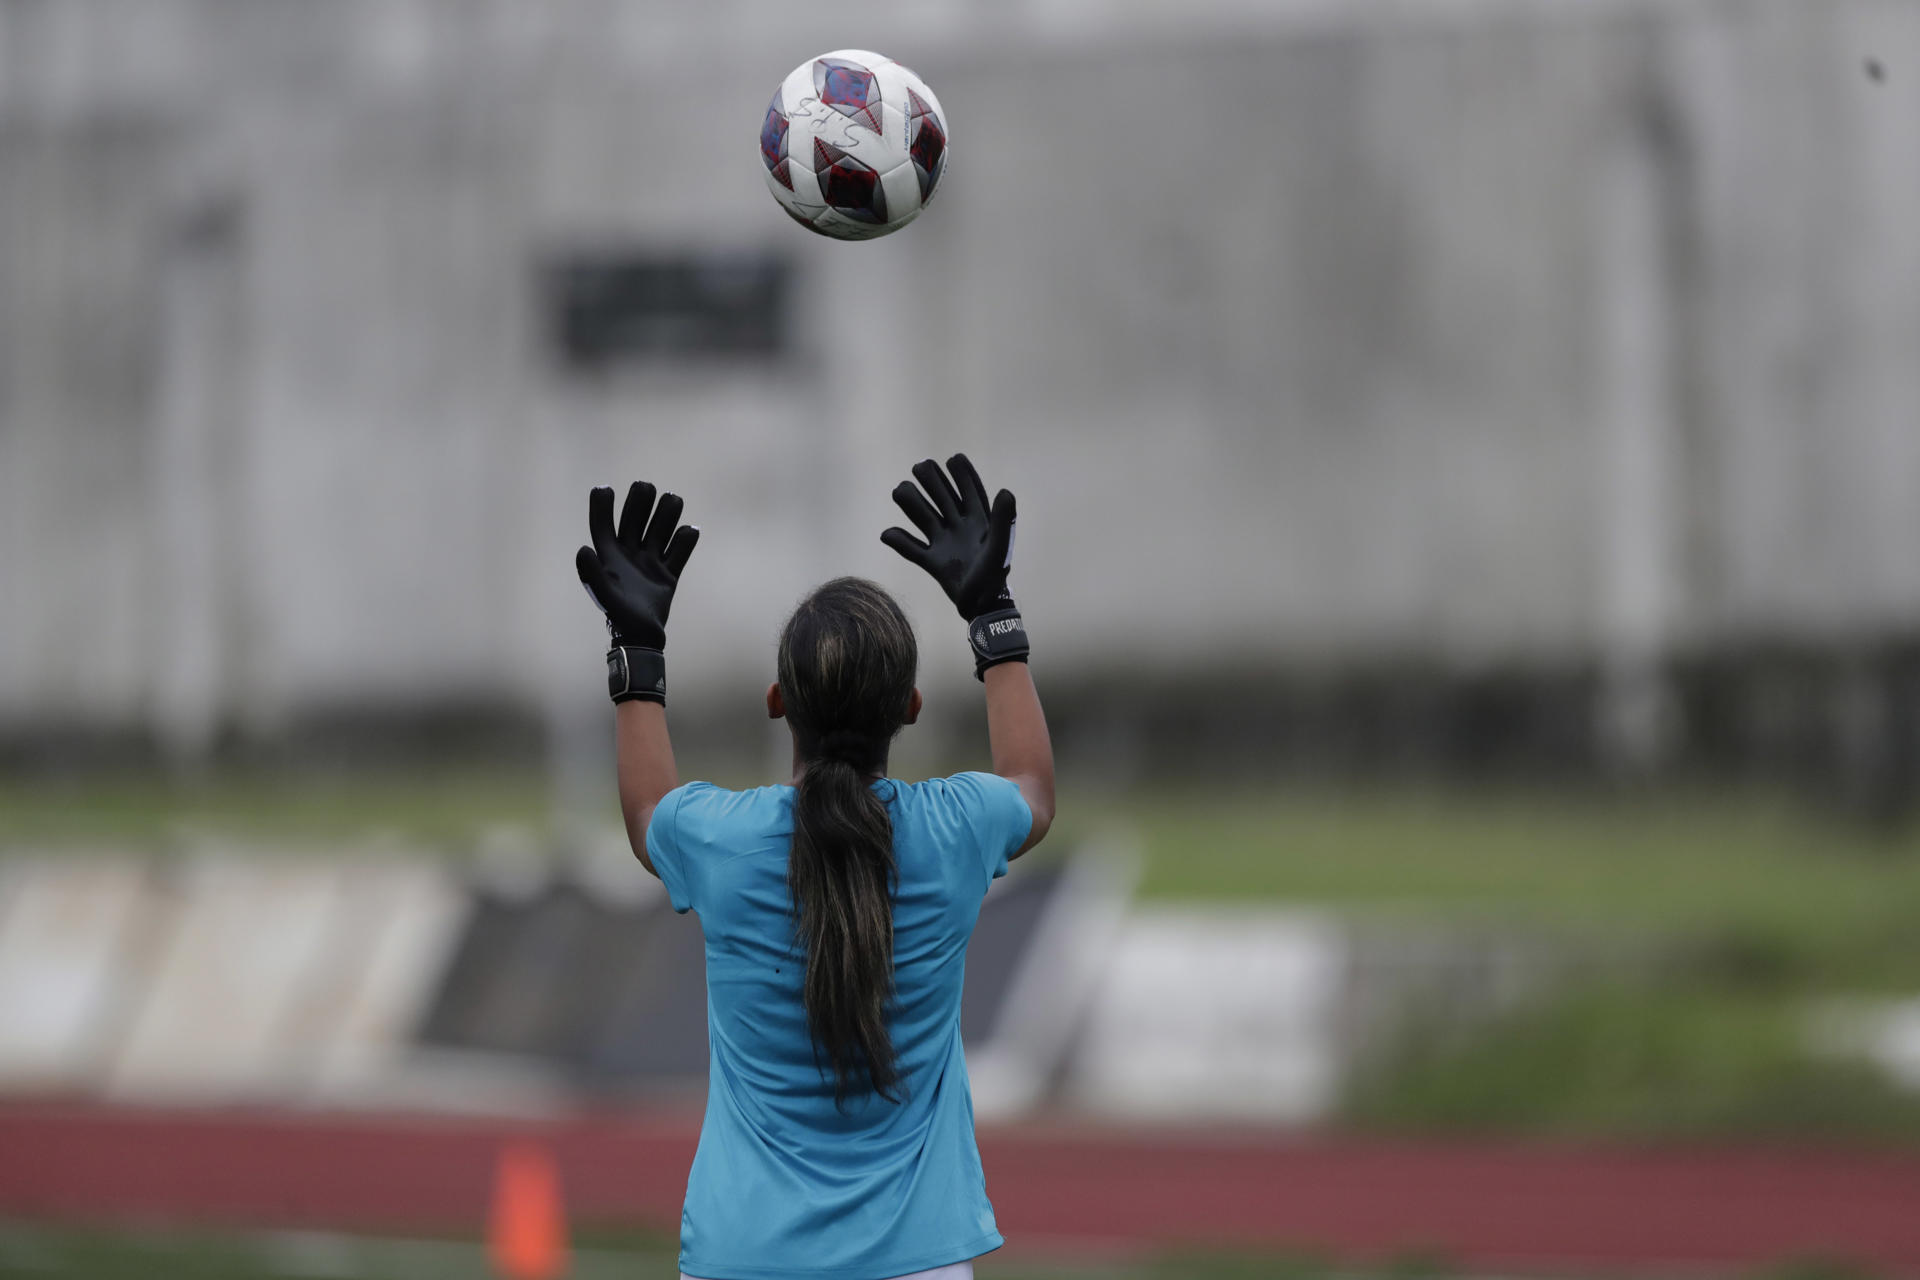 Deportes como el fútbol son útiles para romper los estereotipos de género, afirma una ONG global